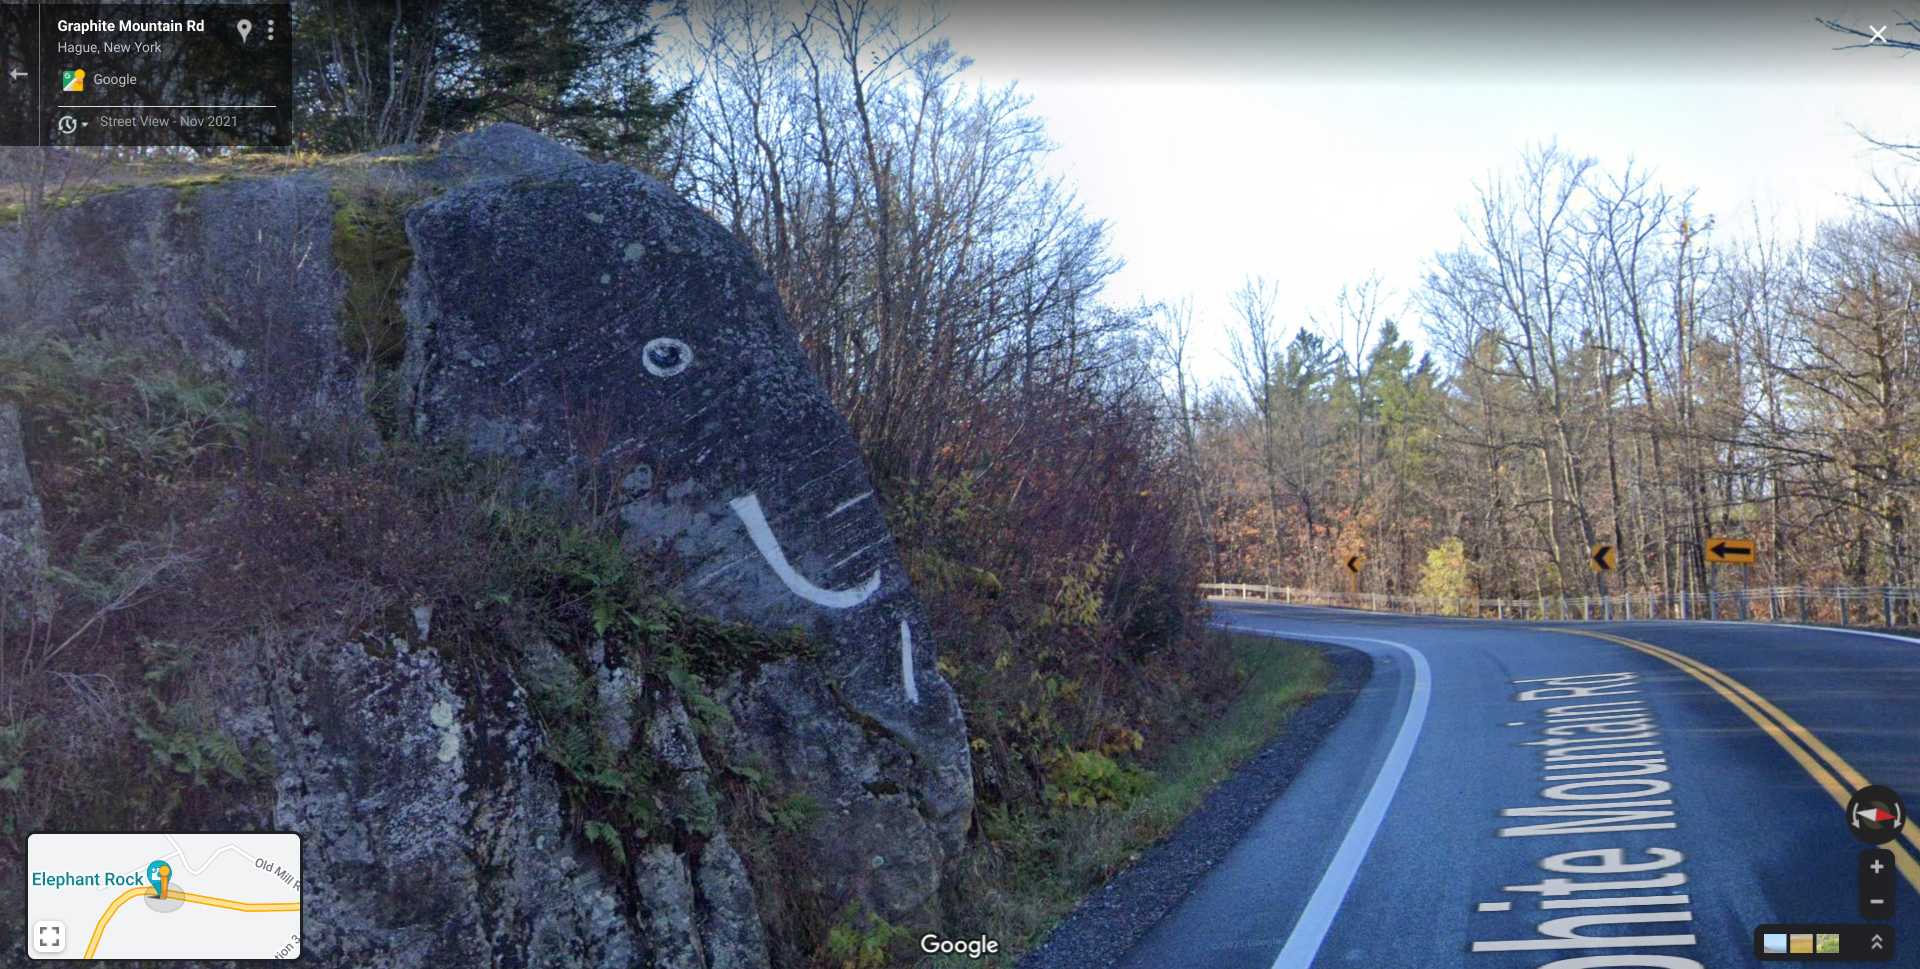 Elephant Rock near Hague, NY